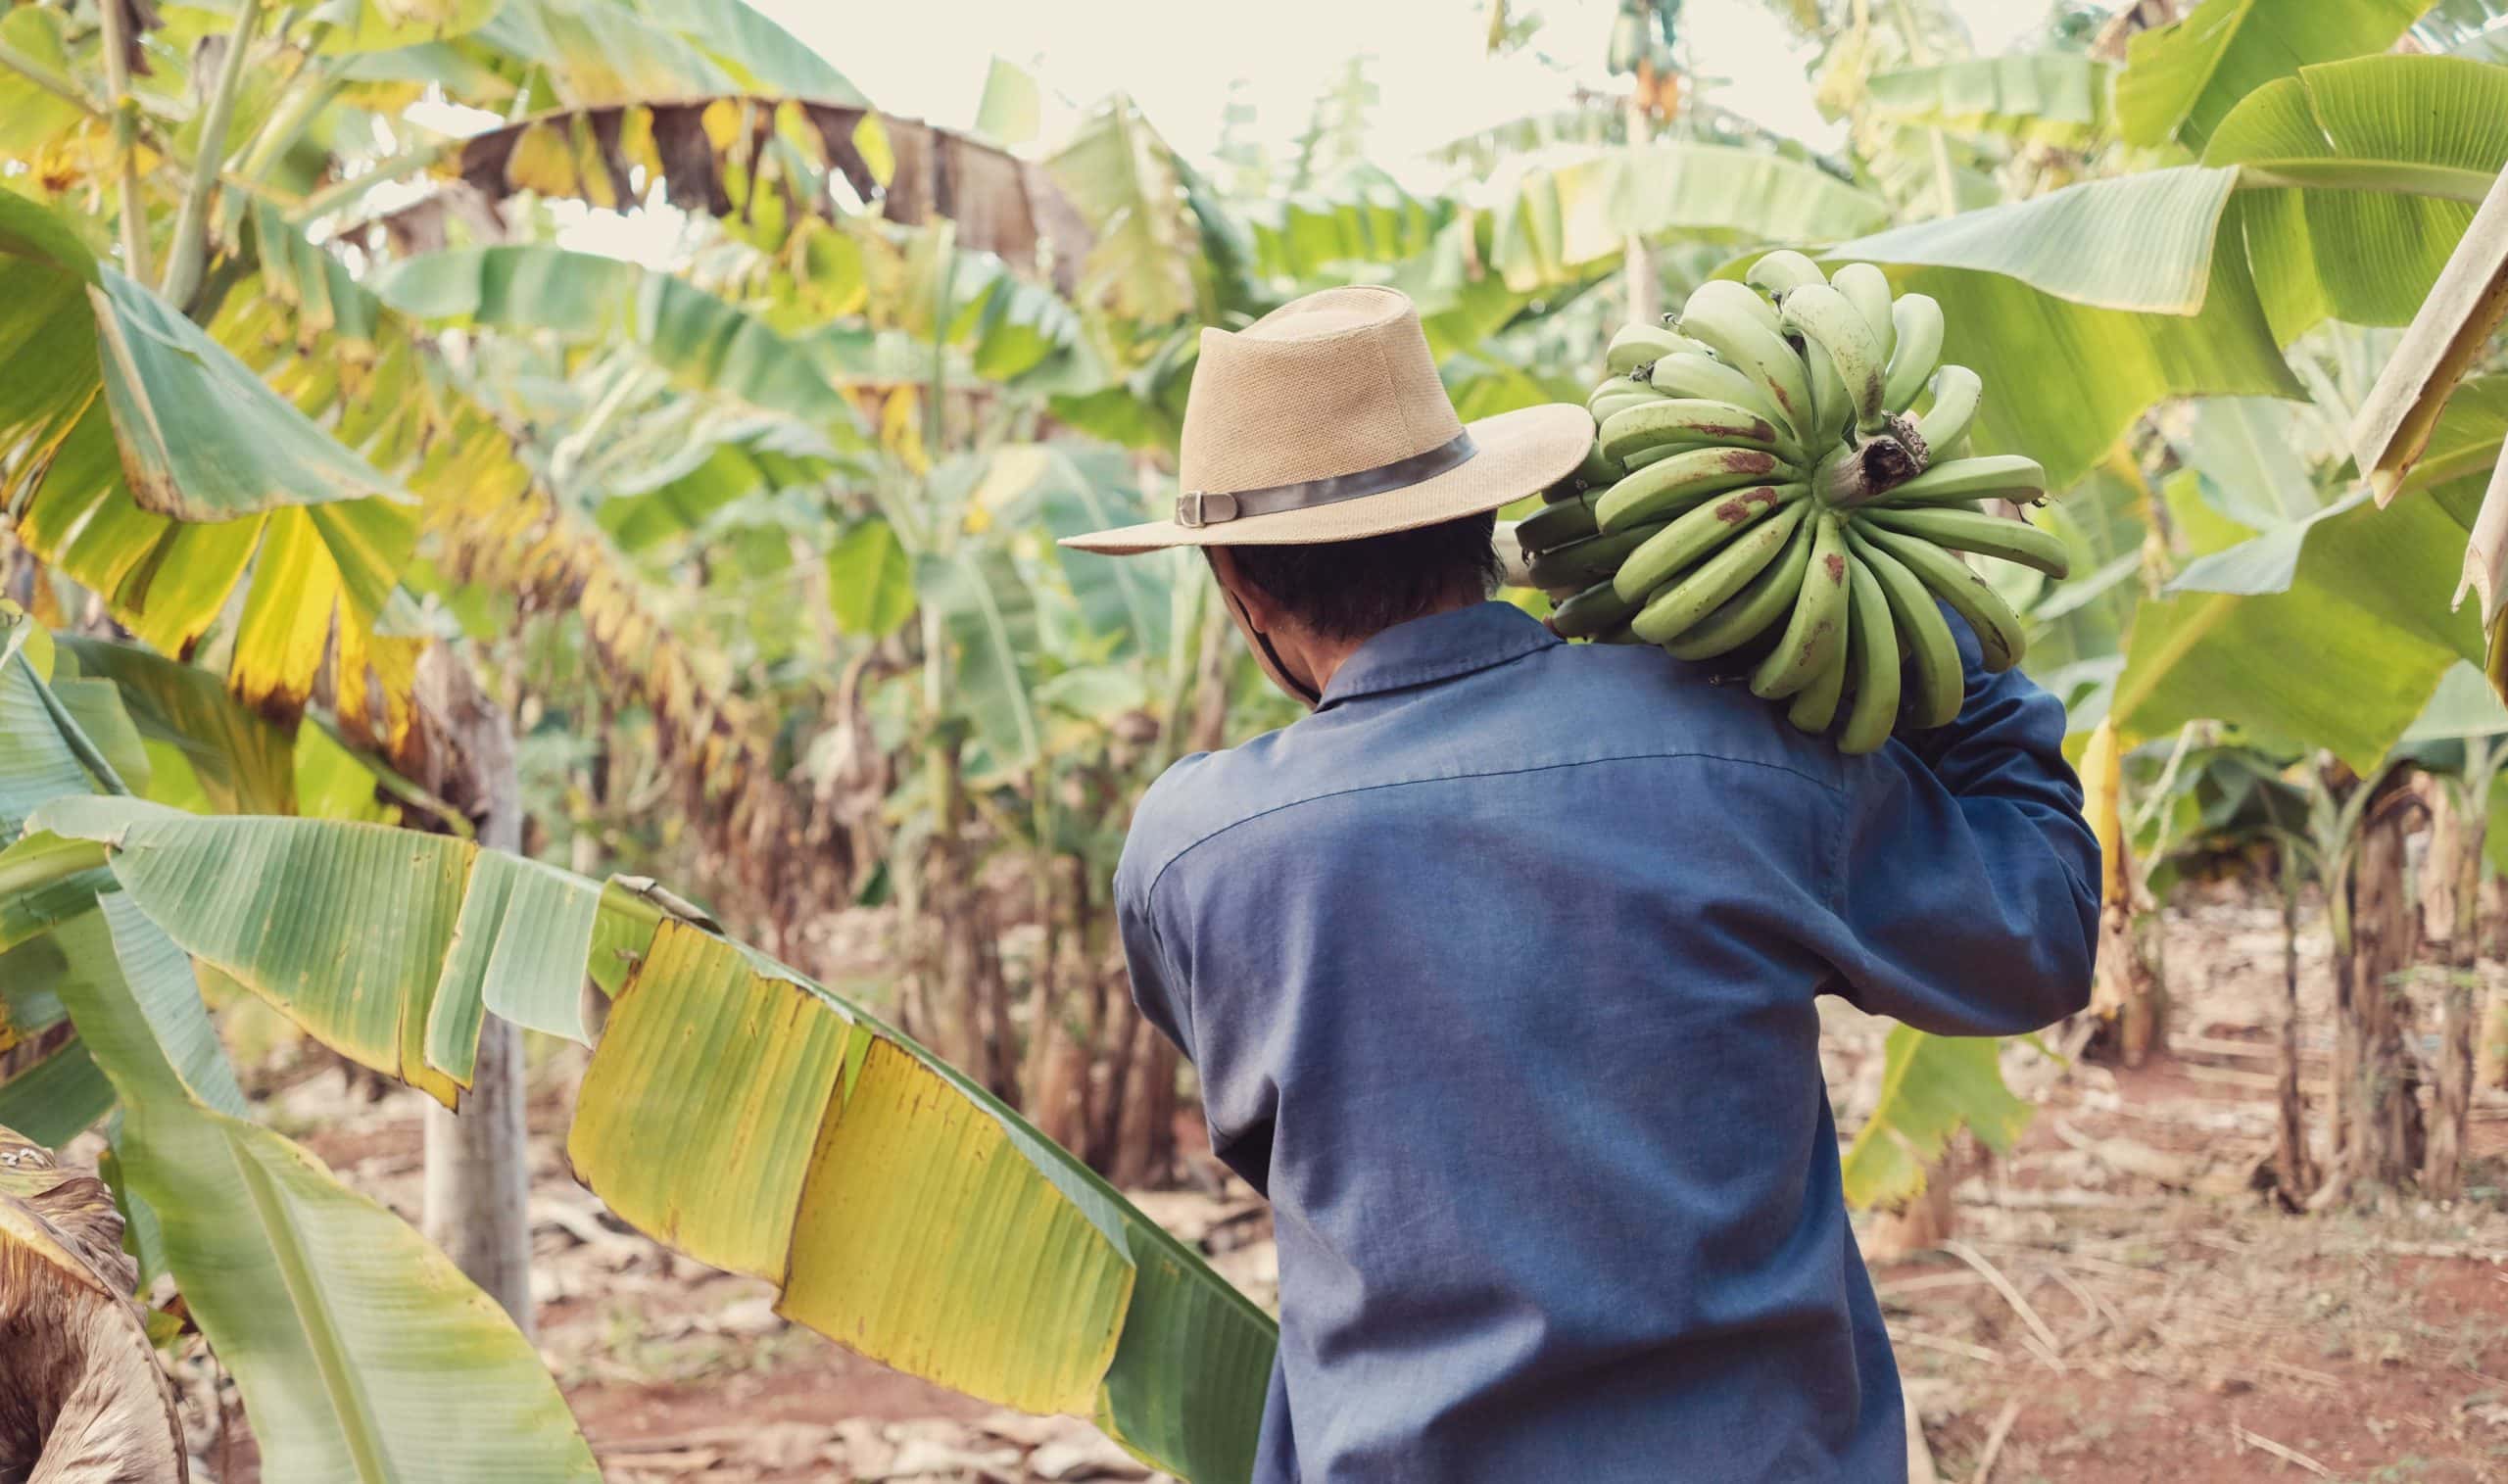 Bananen werden geerntet. Ein Symbolfoto für unsere konkreten Nachhaltigkeits-Engagements und Projekte